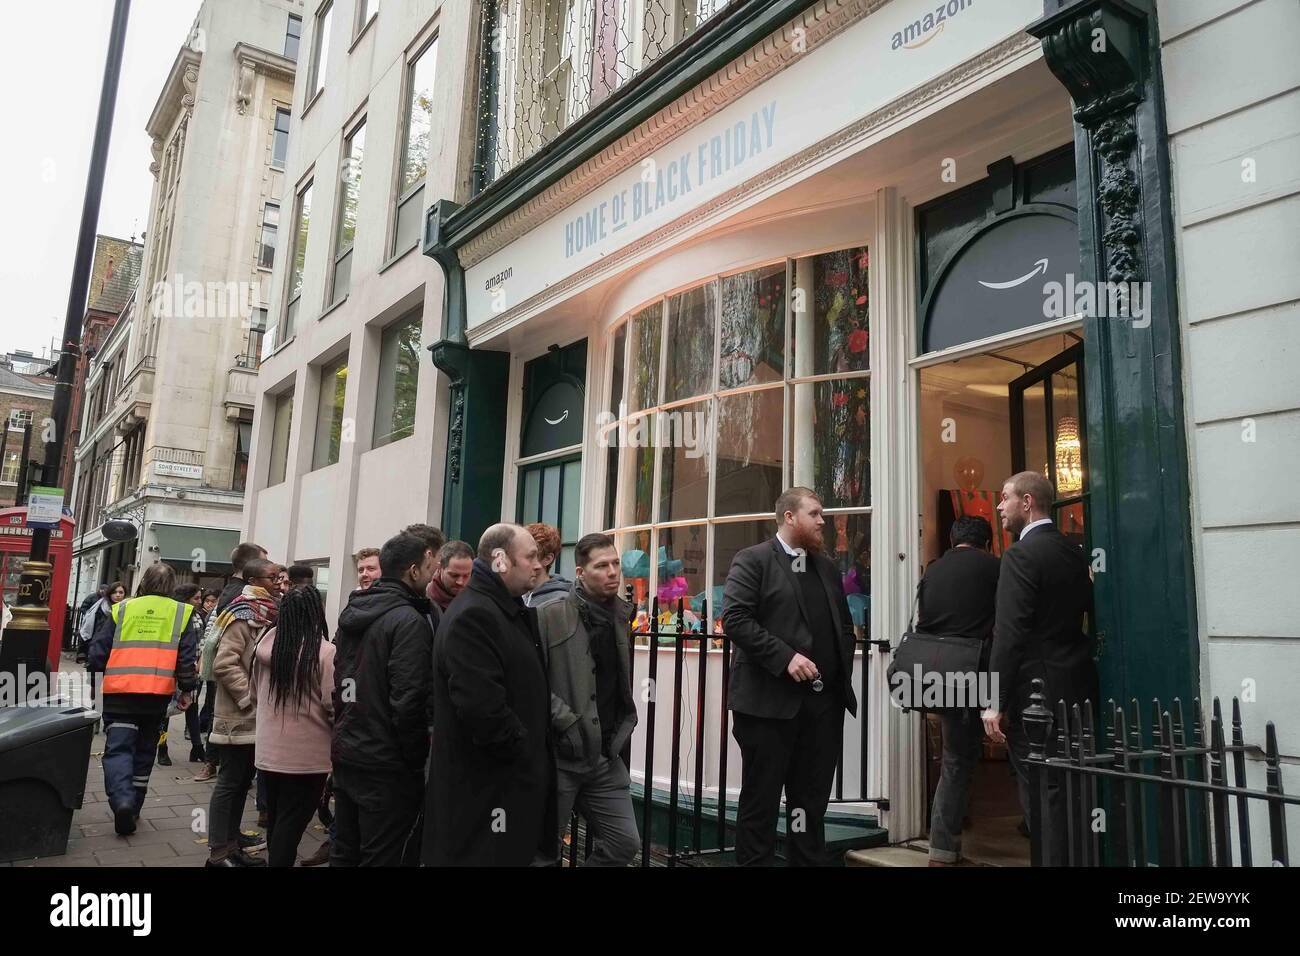 Der Online-Händler Amazon eröffnet am 21st. November 2017 einen Pop-up-Shop  in Soho Square im Zentrum Londons.im Rahmen des Black Friday-Verkaufsevents  können Kunden die besten Angebote erkunden und Preise gewinnen. Der  Pop-up-Shop ist